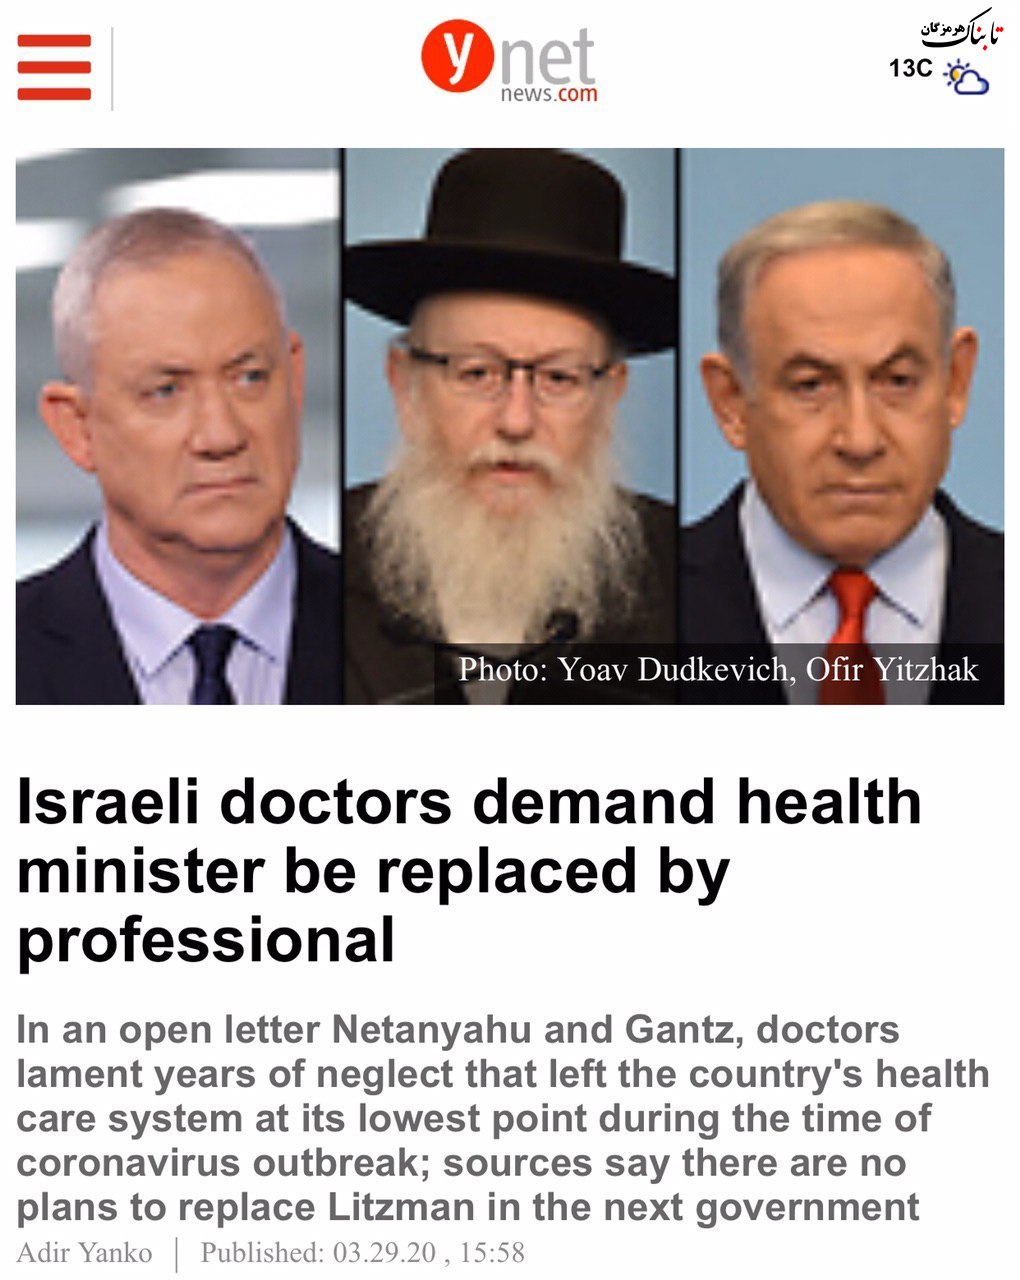 پزشكان اسرائيلى خواهان تغيير وزير بهداشت اين كشور در كابينه جديد شدند